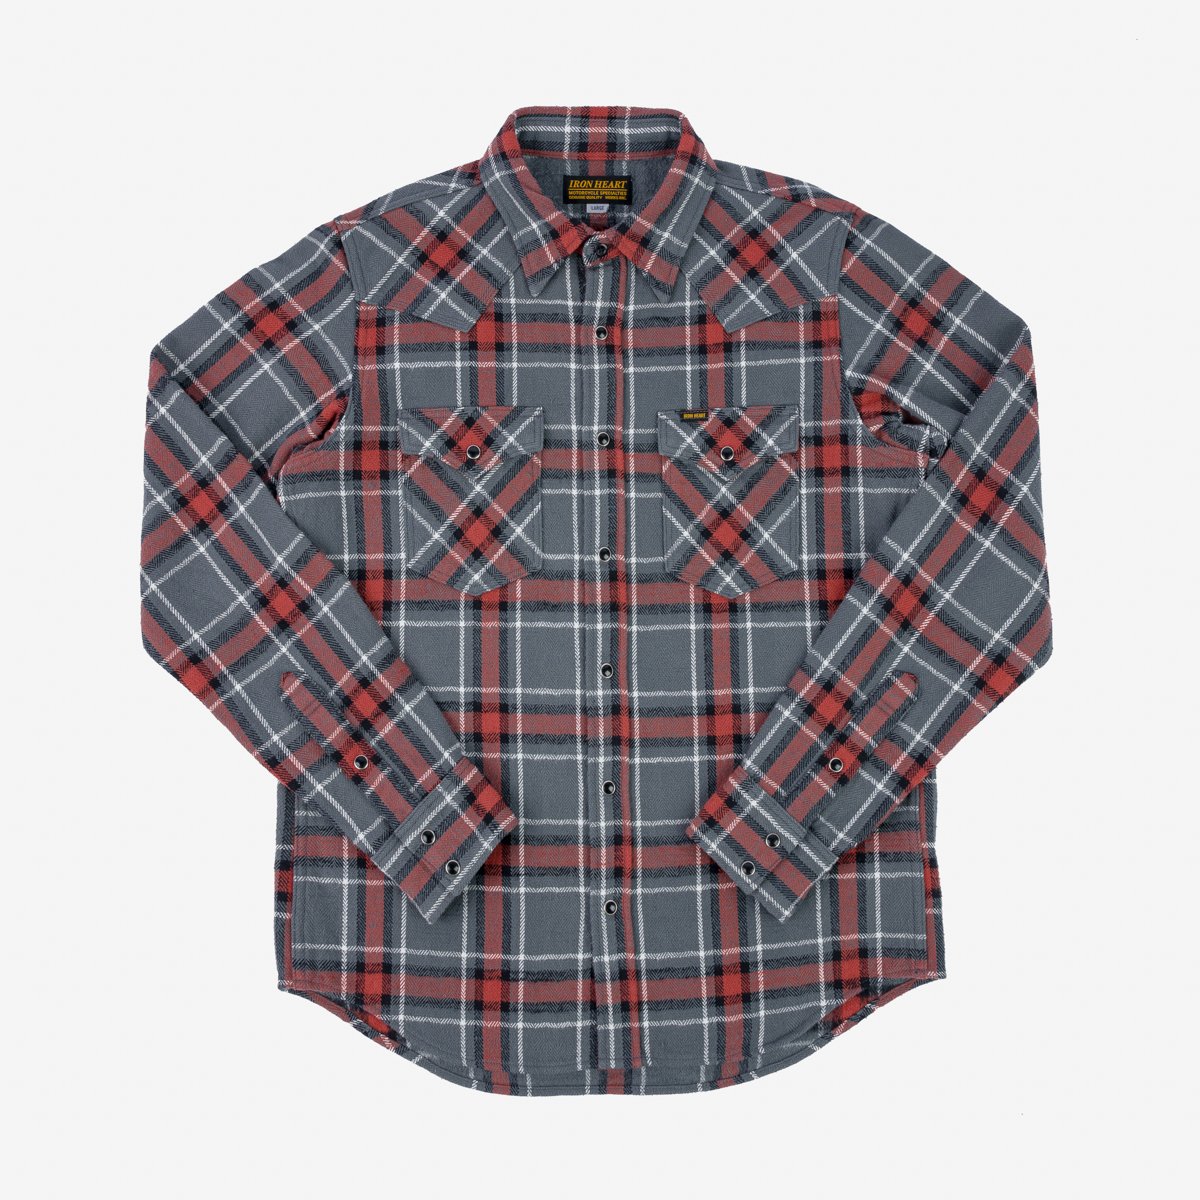 Iron Heart IHSH-369-GRY - 12oz Slubby Heavy Flannel Herringbone Check Western Shirt - Grey